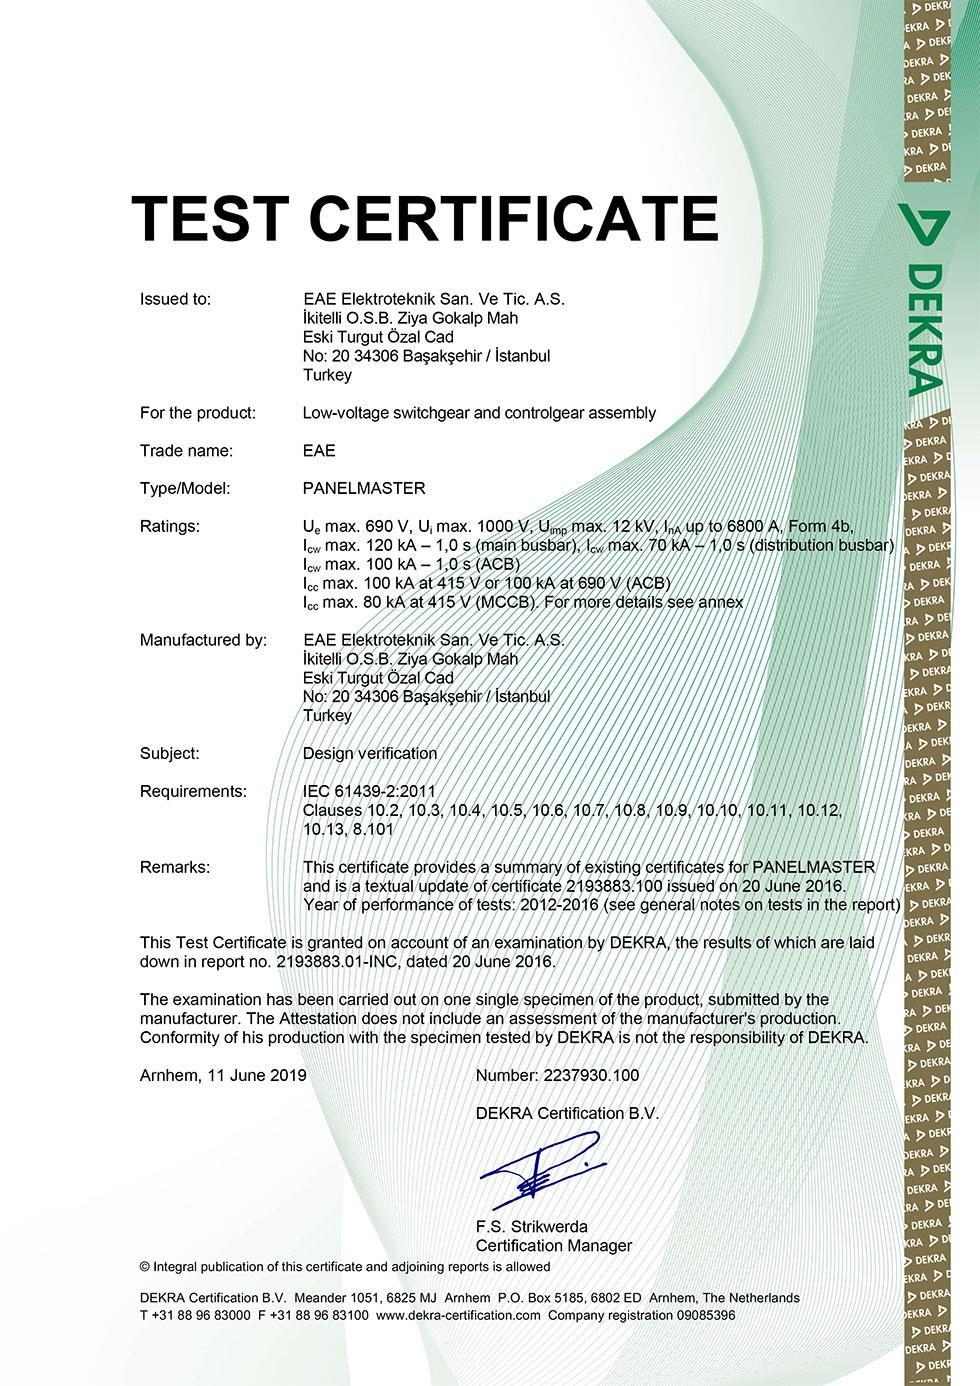 PanelMaster IEC 61439 1-2 Combined Certificate